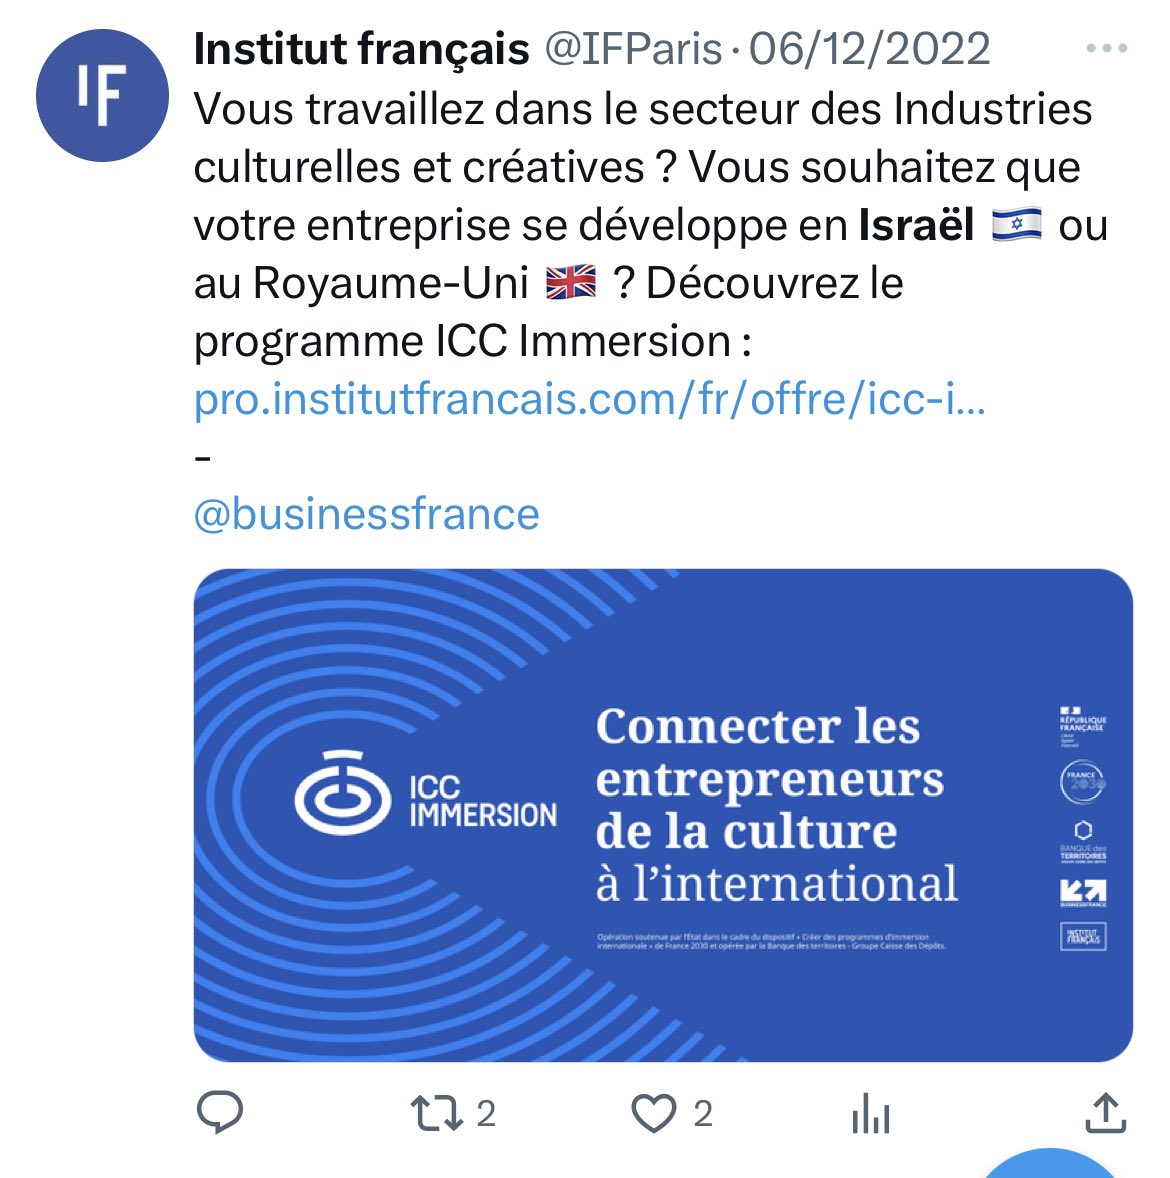 Malgré la colonisation, l’occupation et l’apartheid, l’institut français fait de la promo pour des investissements en Israël, cette promo constitue une complicité dans les crimes contre les palestiniens. Investissements risqués et honteux. 
#BoycottIsrael #ShutDownNation